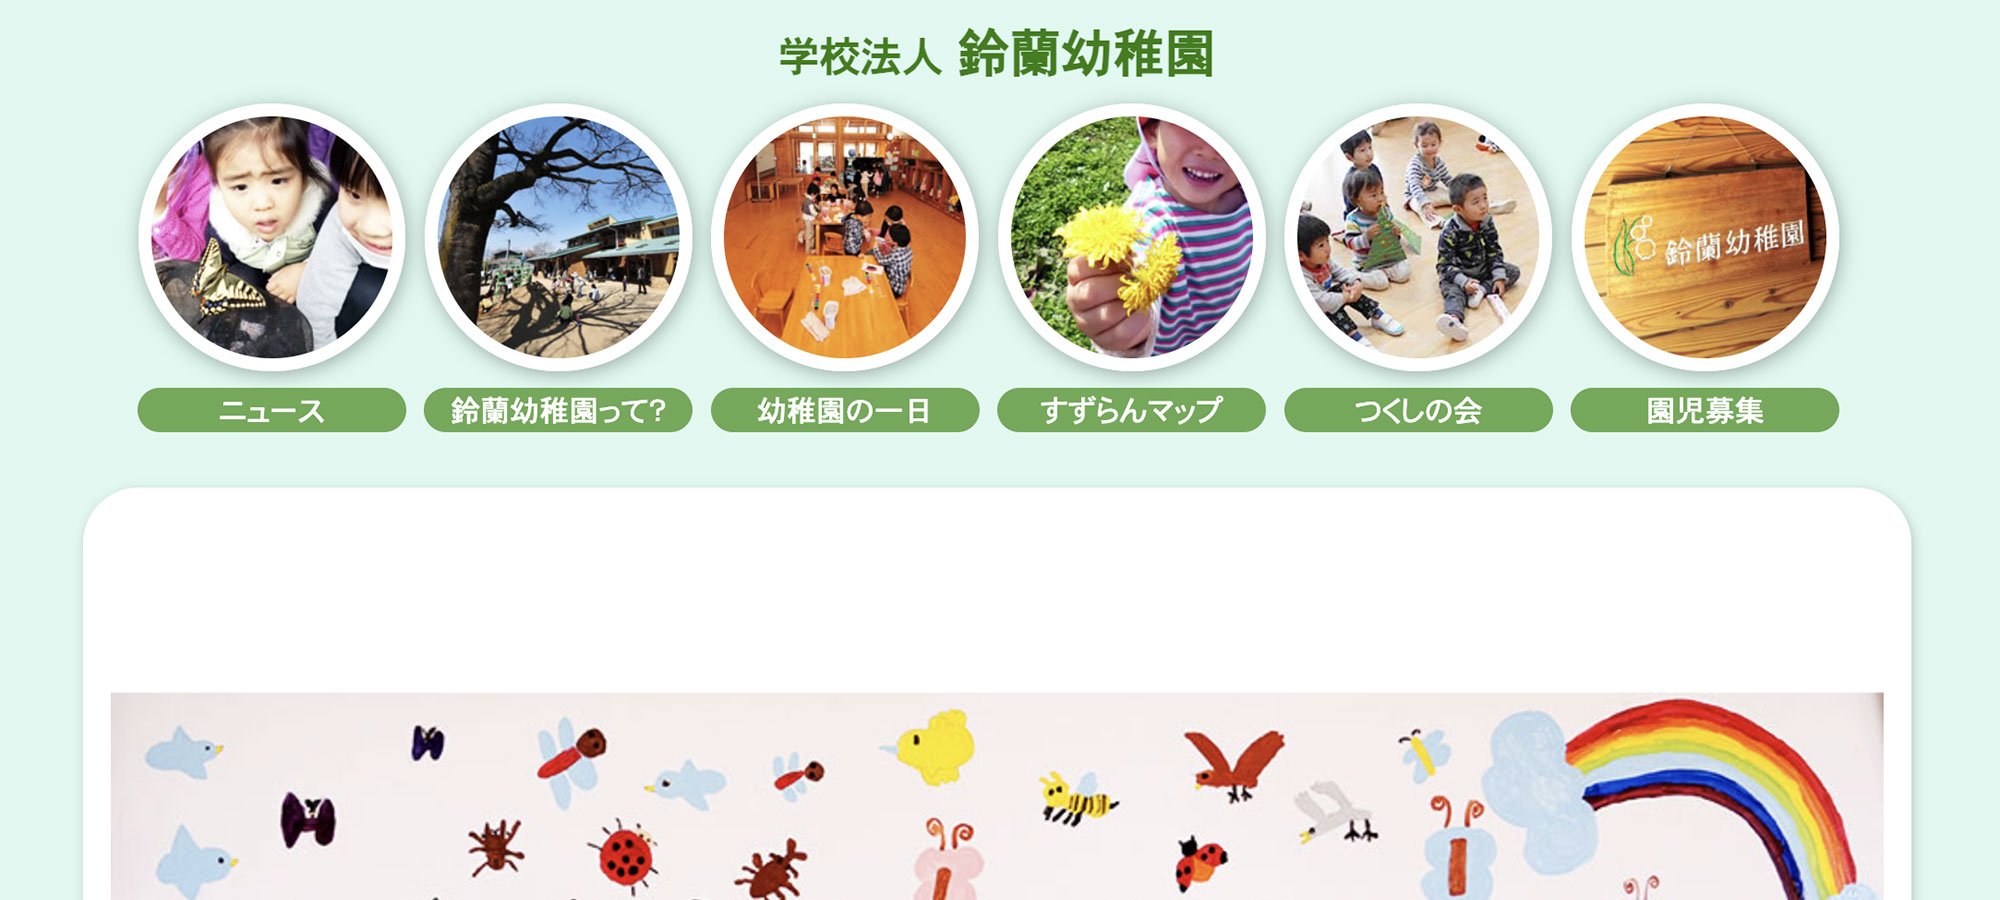 鈴蘭幼稚園のサイトイメージ